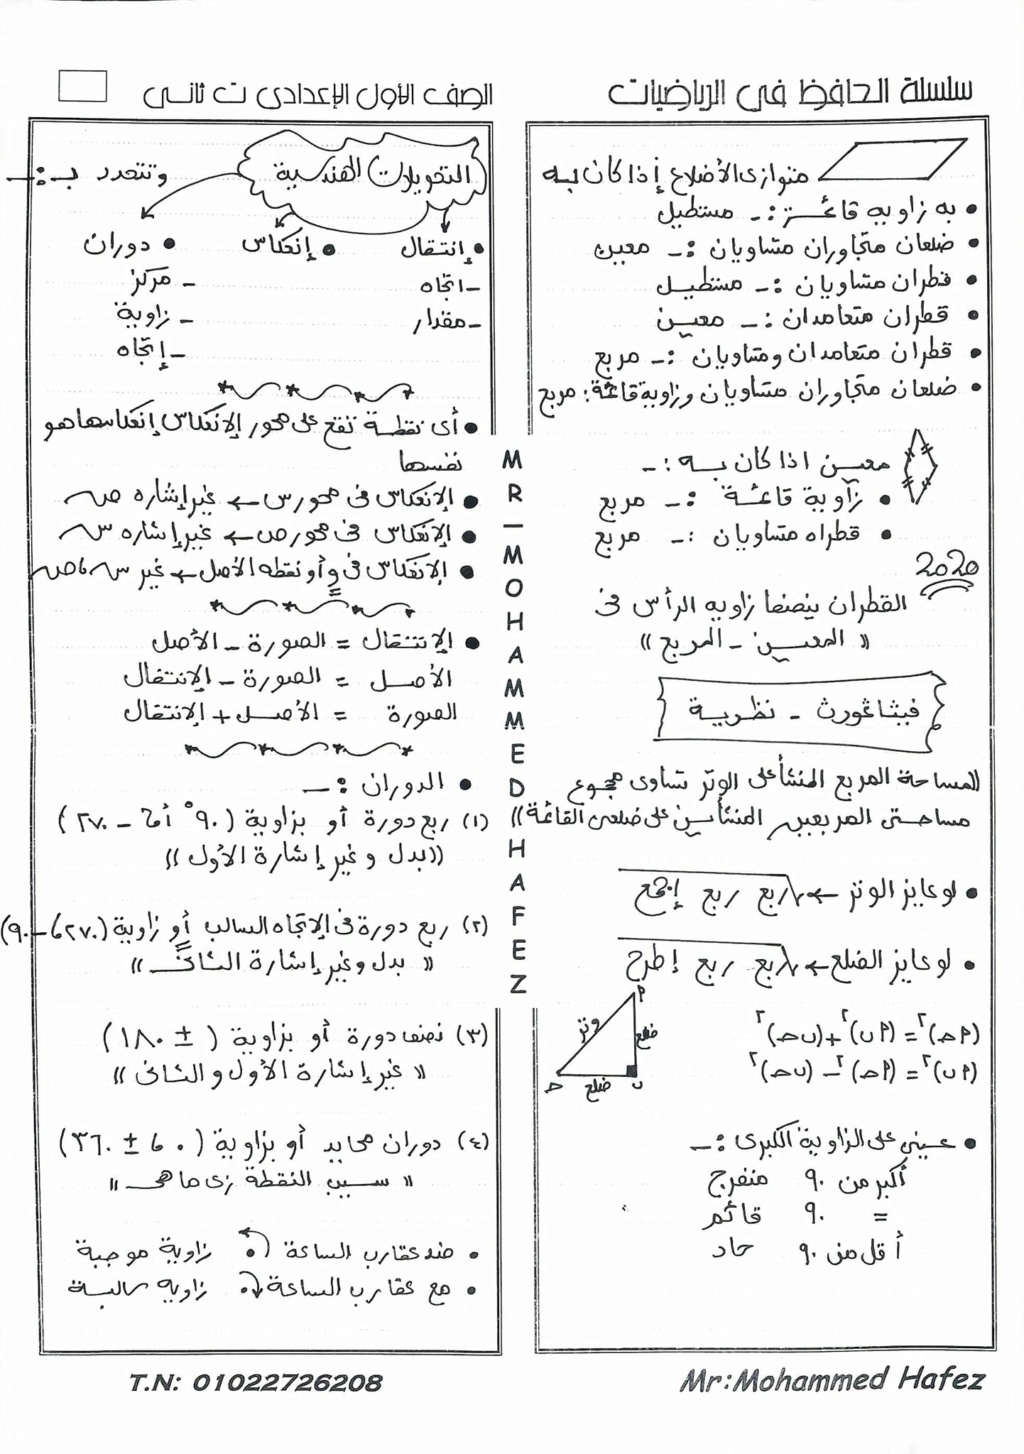 الرياضيات - ملخص شامل لأهم نقاط الرياضيات أولى اعدادي ترم ثاني أ/ محمد حافظ 760